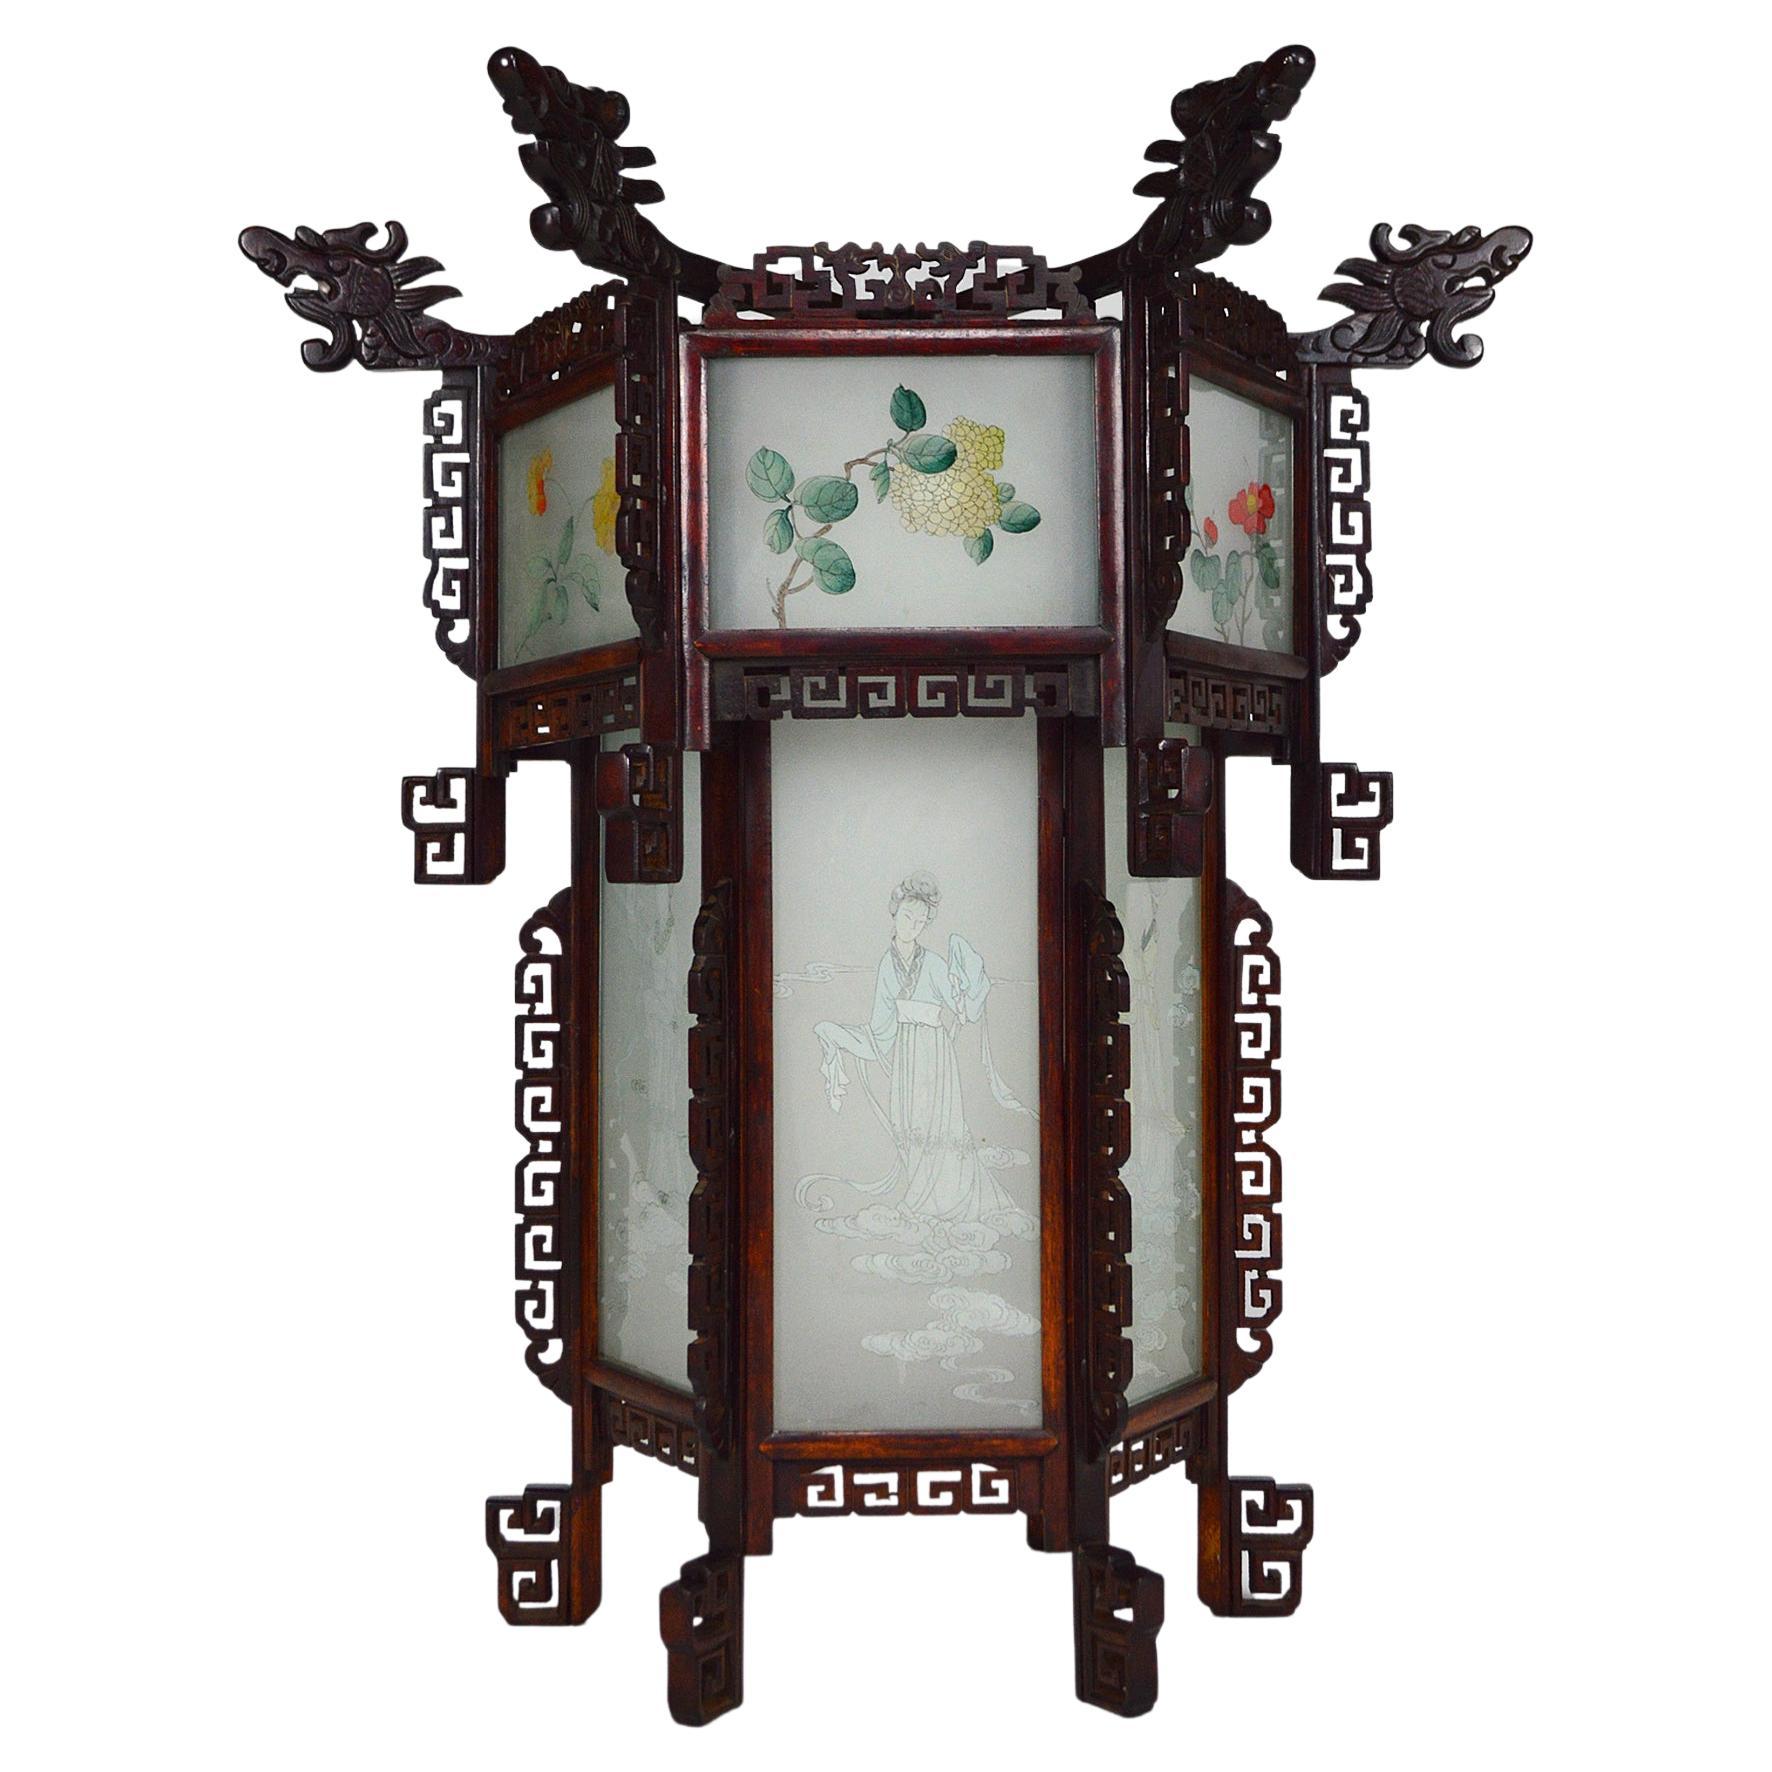 Grande lanterne chinoise en bois avec dragons et verre peint, datant d'environ 1900